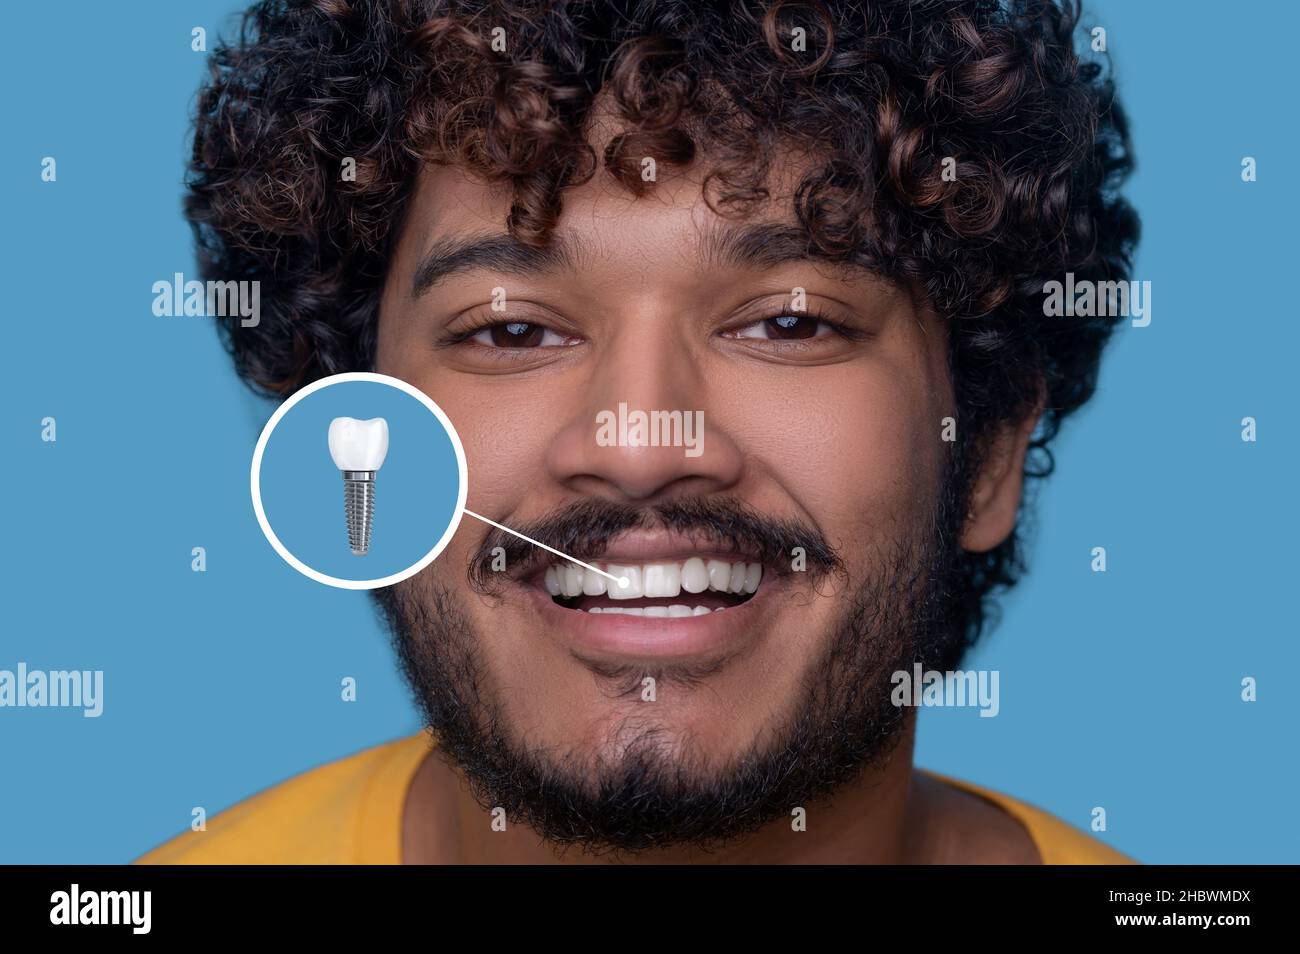 Giovane uomo con un sorriso toothy che dimostra il suo impianto dentale Foto Stock